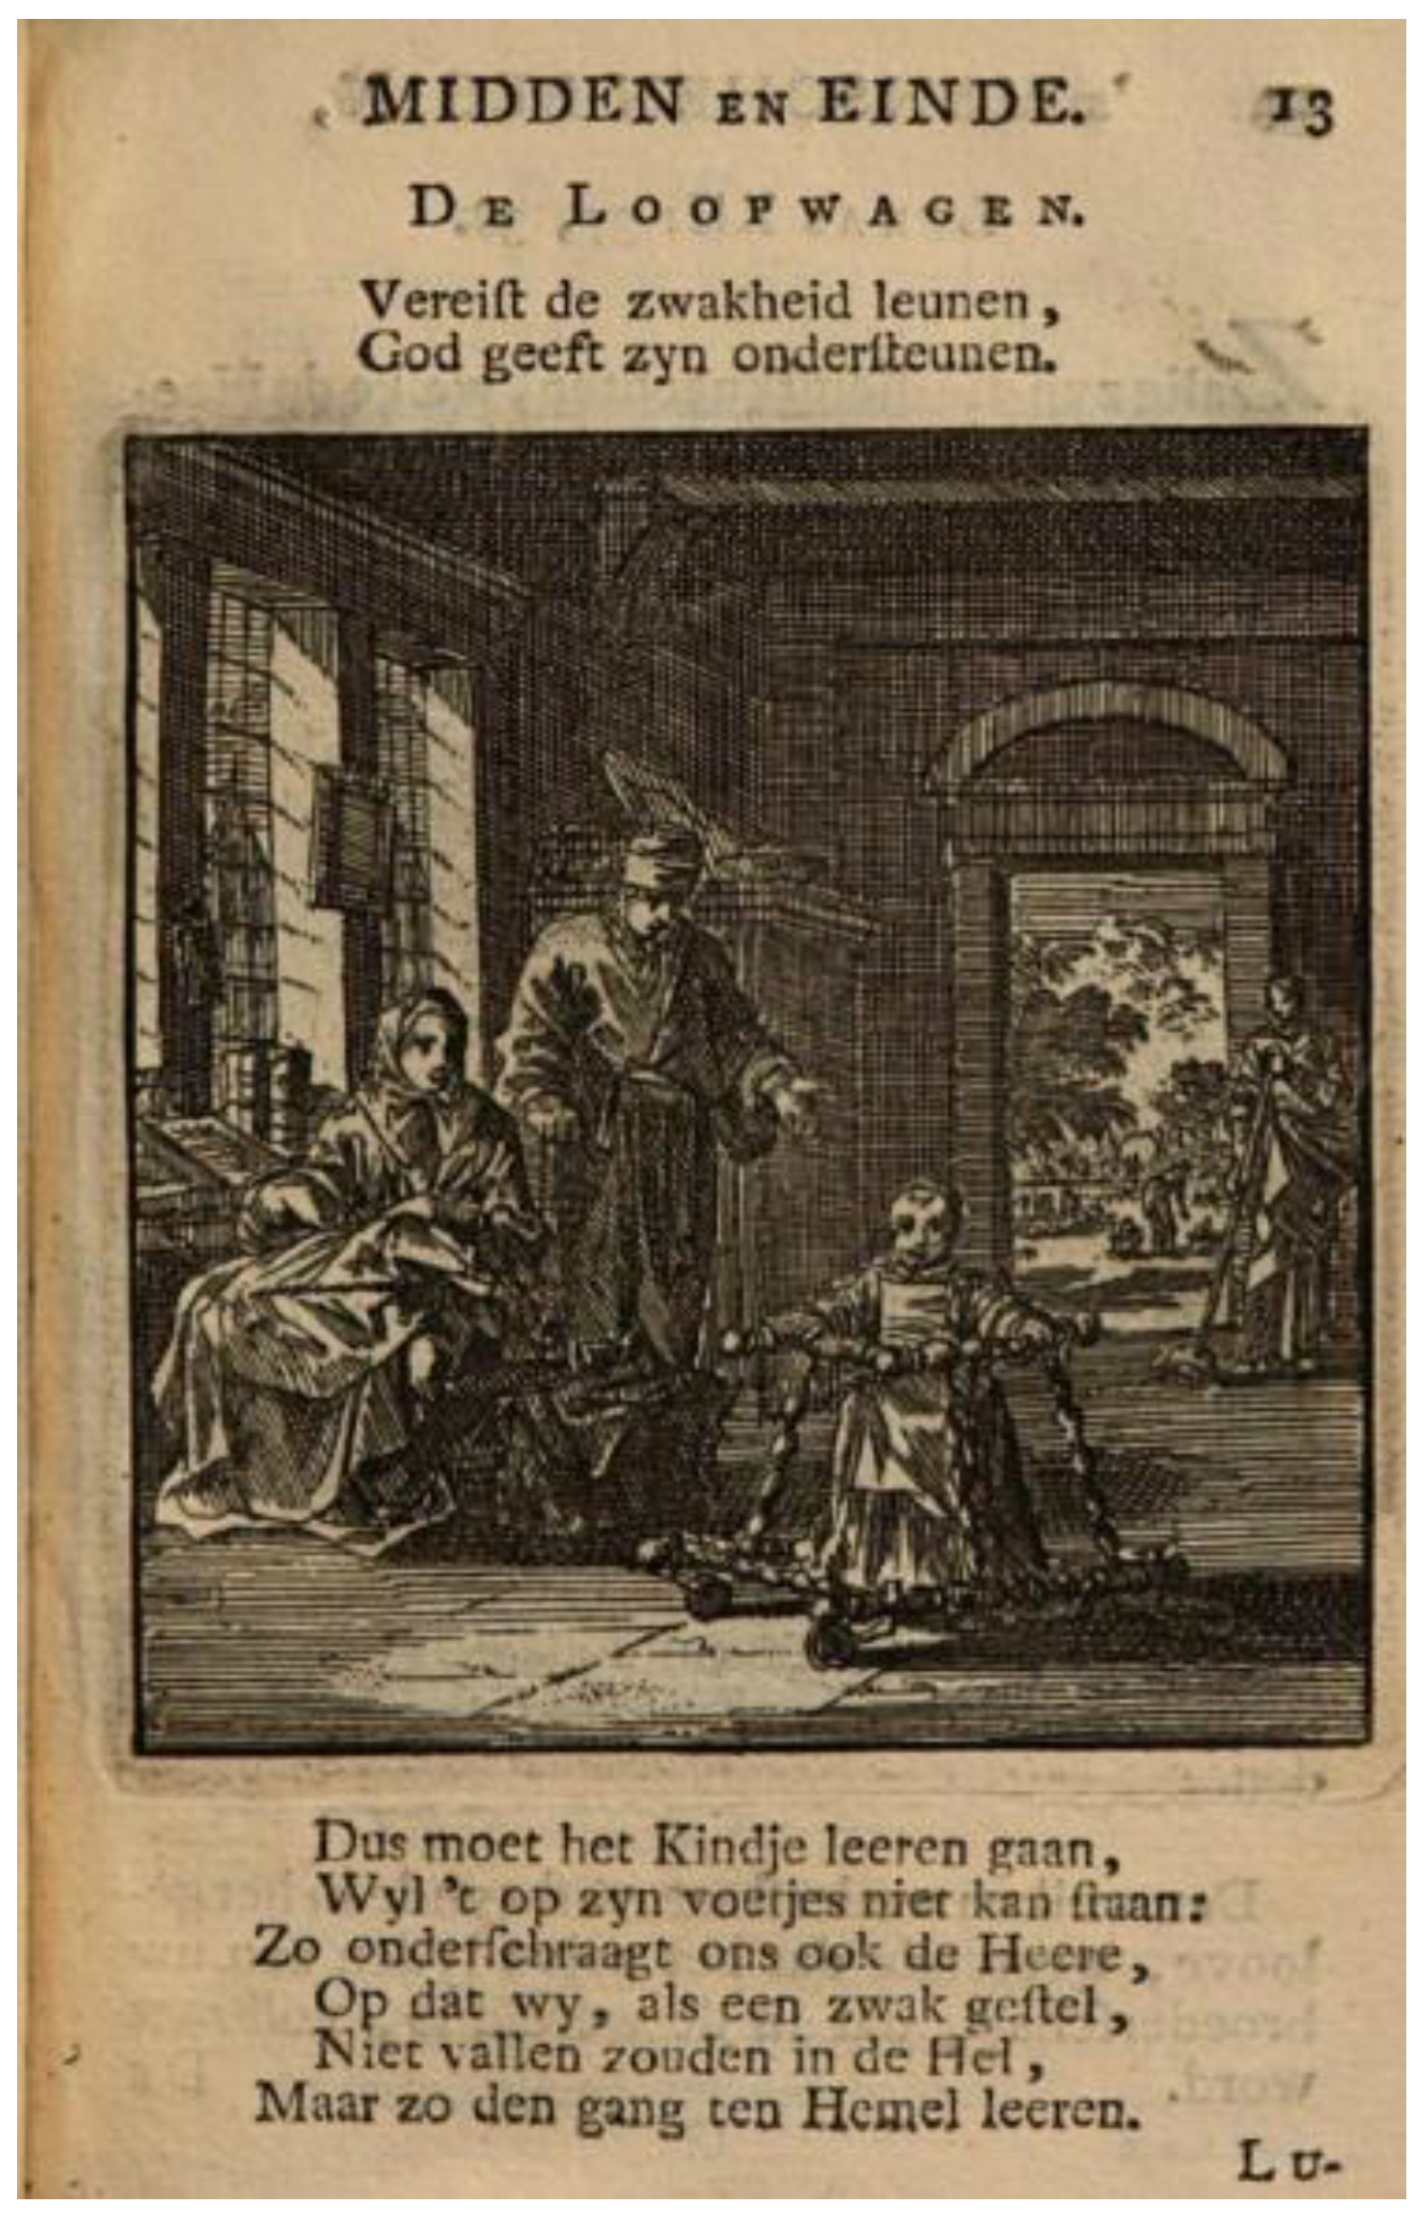 Midden in | Begin, Menschen, Genre Des Einde Jan en Painting | Dutch Luyken’s The (1712) Free Humanities of Full-Text Emblematic Influence Prints: